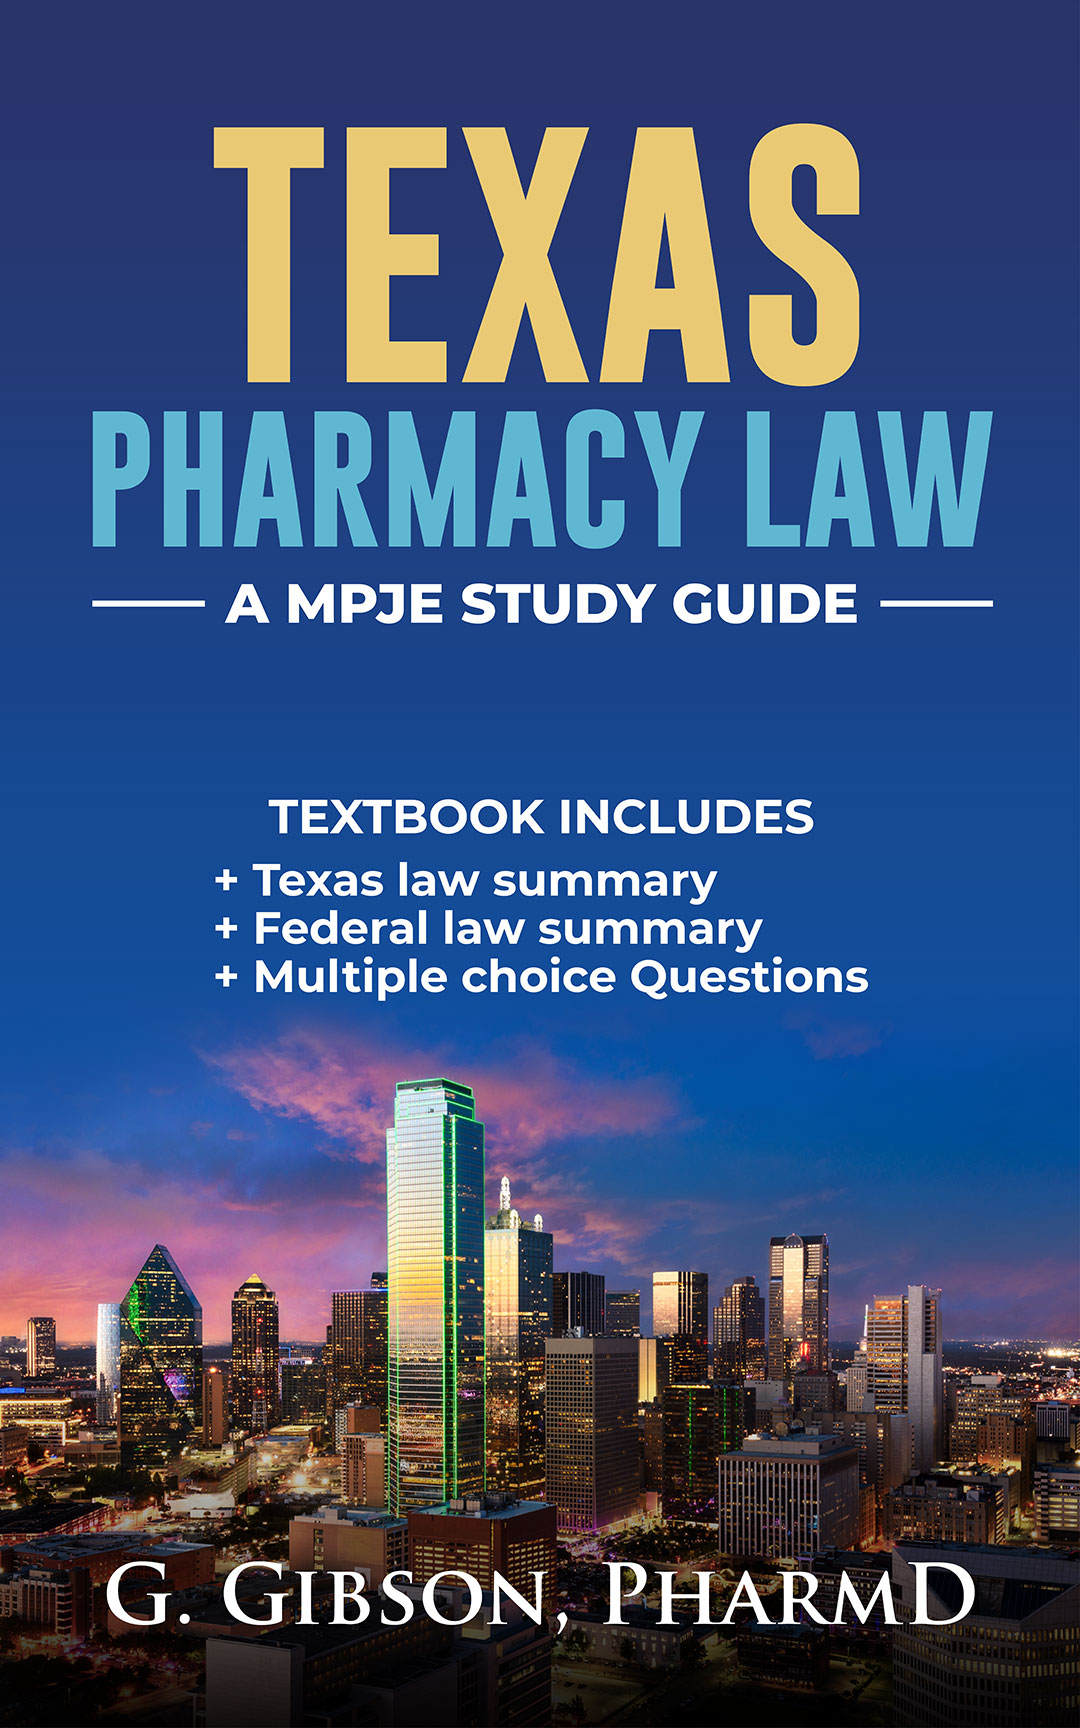 Texas Pharmacy Law: A MPJE Study Guide